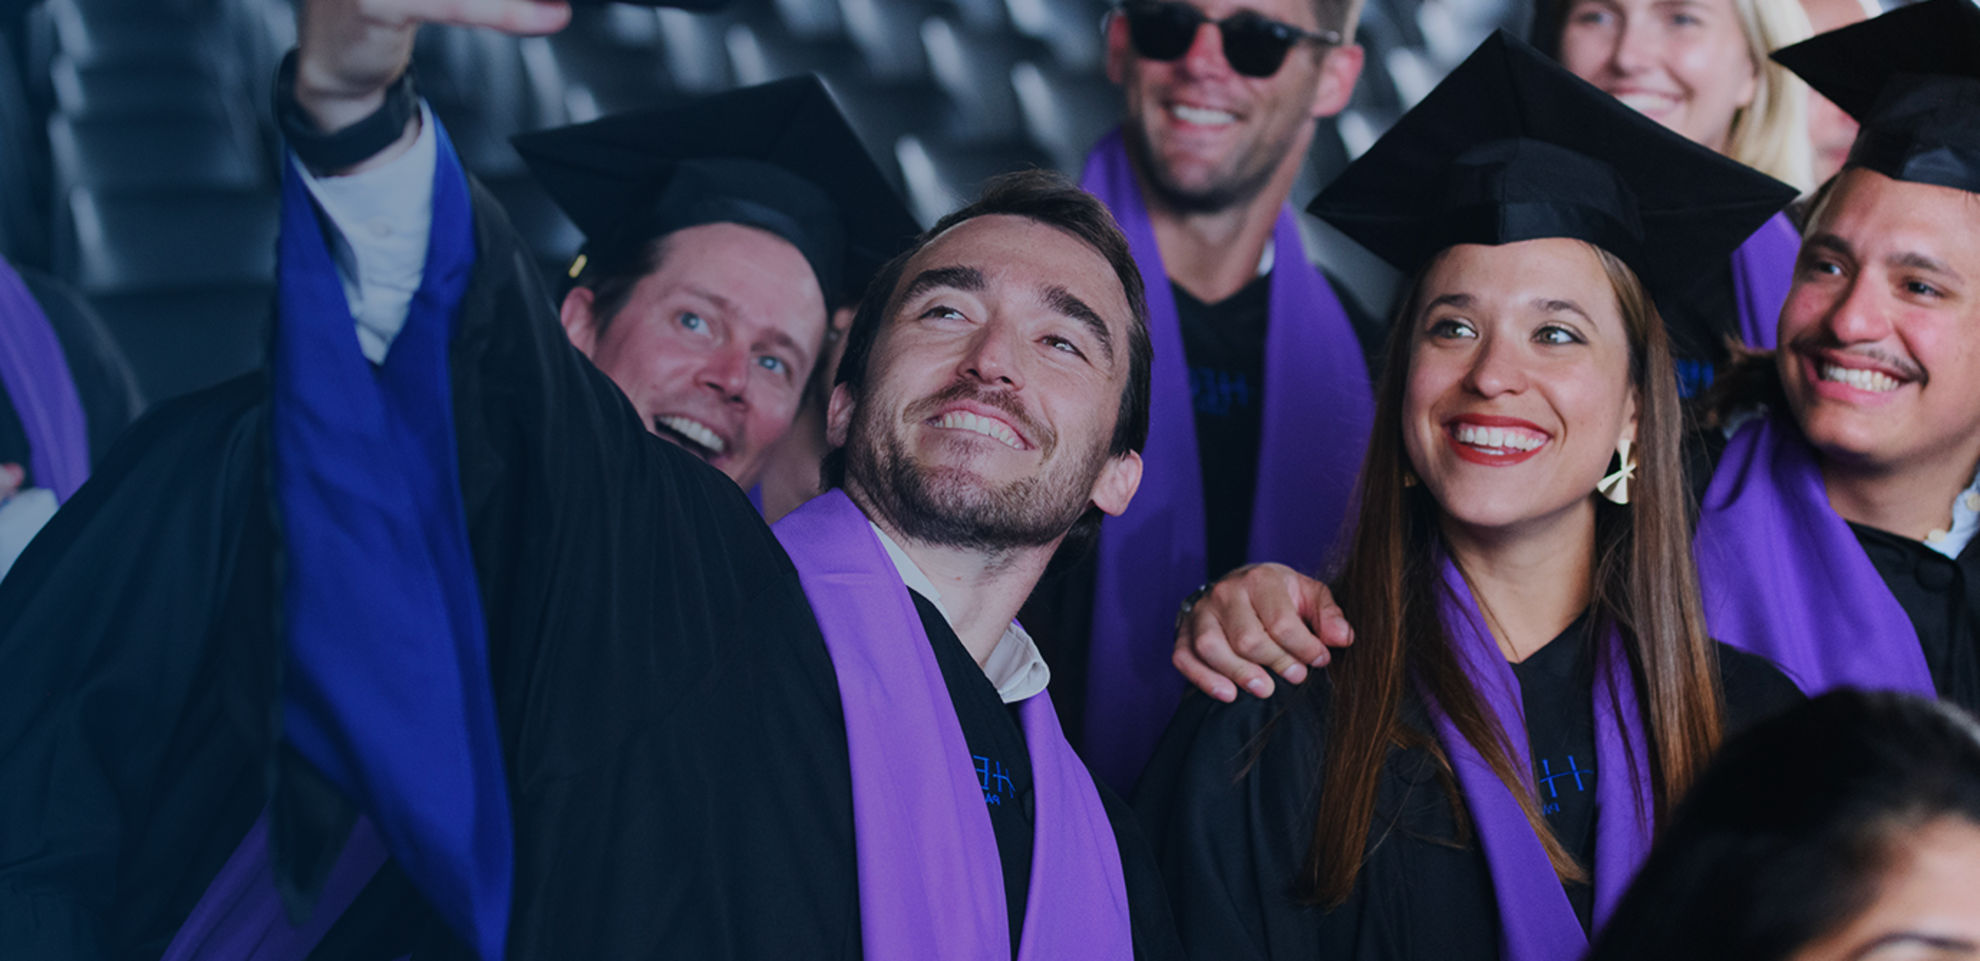 Un groupe de diplômés prenant un selfie, souriant et ayant l'air heureux. Ils portent des toges académiques noires et des chapeaux avec des écharpes violettes. L'arrière-plan montre une zone de sièges, indiquant une cérémonie de remise des diplômes à l'intérieur